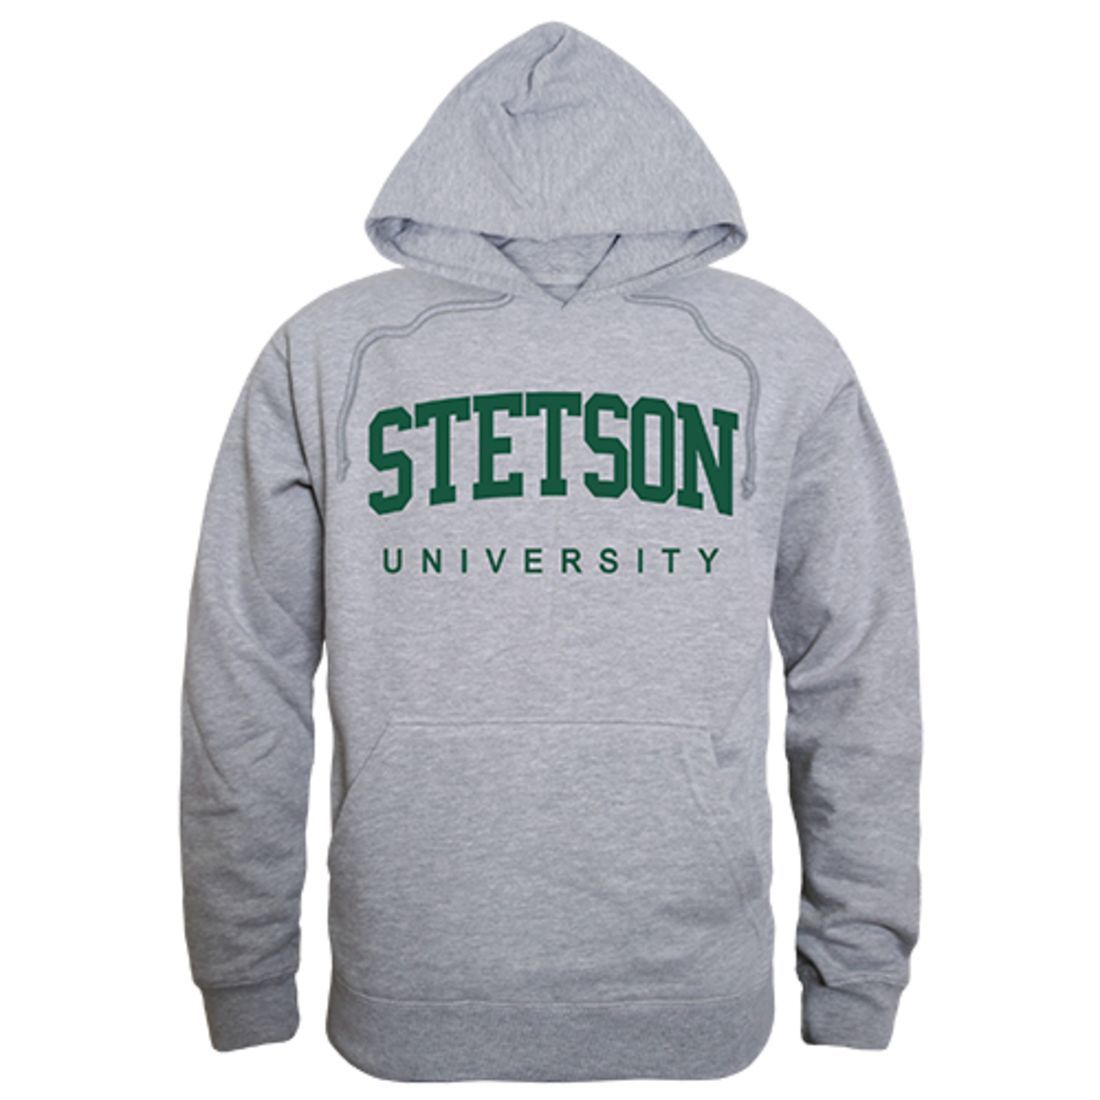 Stetson University Game Day Hoodie Sweatshirt Heather Grey-Campus-Wardrobe